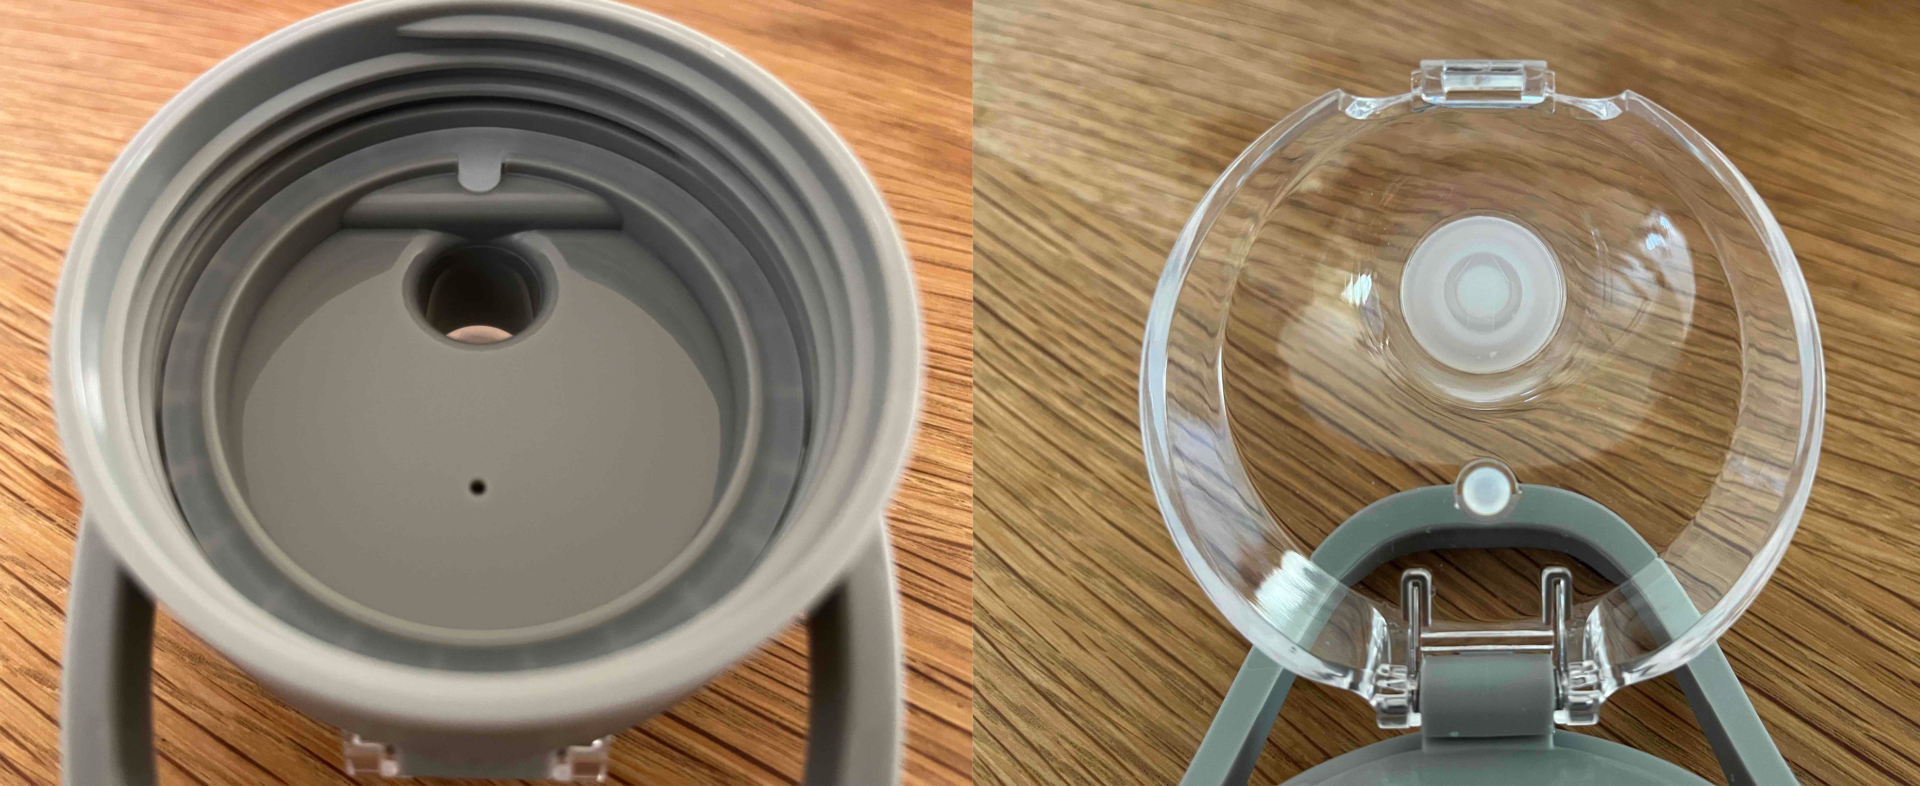 飲みくちユニットについているパッキンの2枚の写真。左側はフタの溝に沿った輪ゴムのような形状のパッキンで、右側は飲みくちにあたる部分の２ｃｍくらいの丸いパッキンです